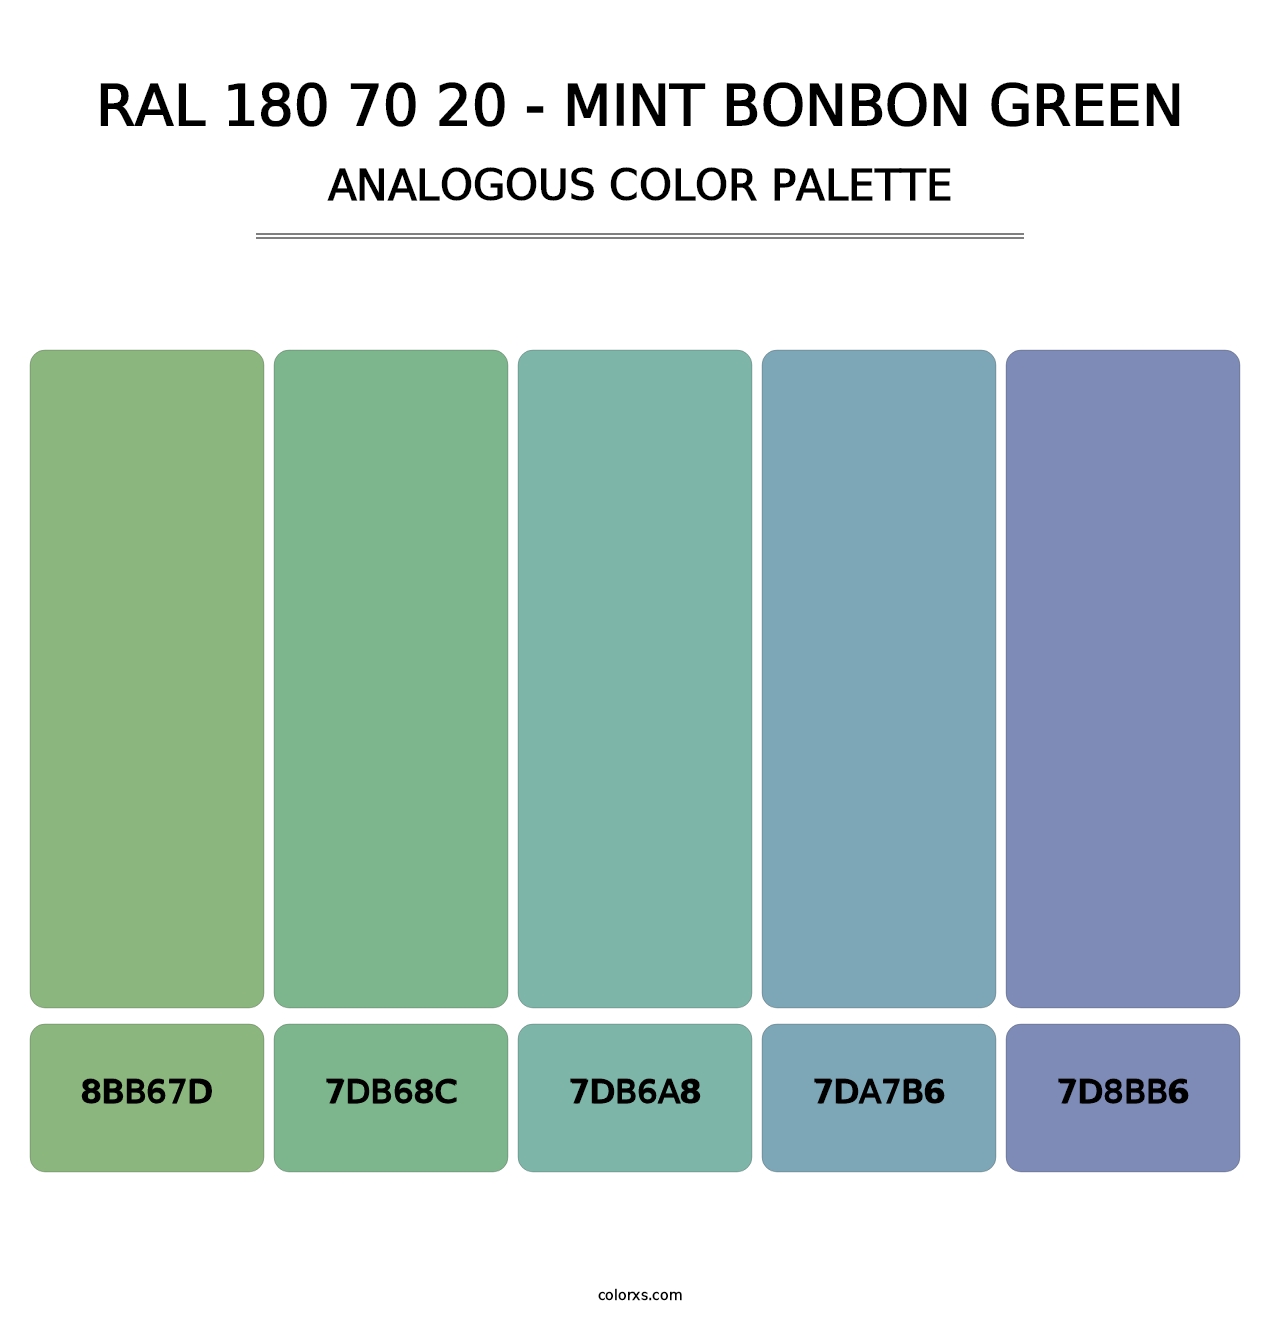 RAL 180 70 20 - Mint Bonbon Green - Analogous Color Palette